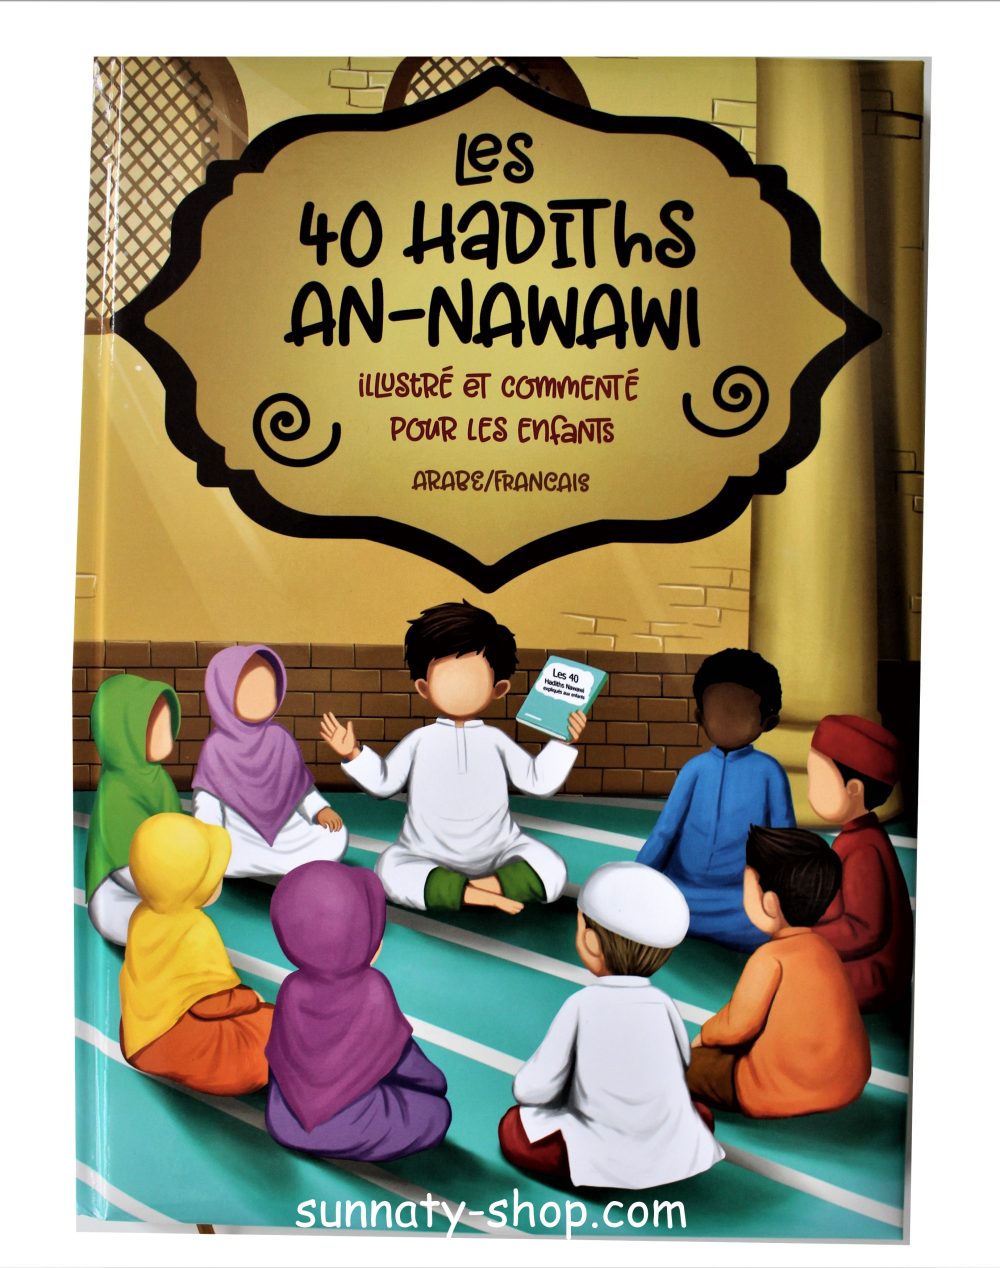 Les 40 hadiths AN-NAWAWI pour enfant (arabe/français)